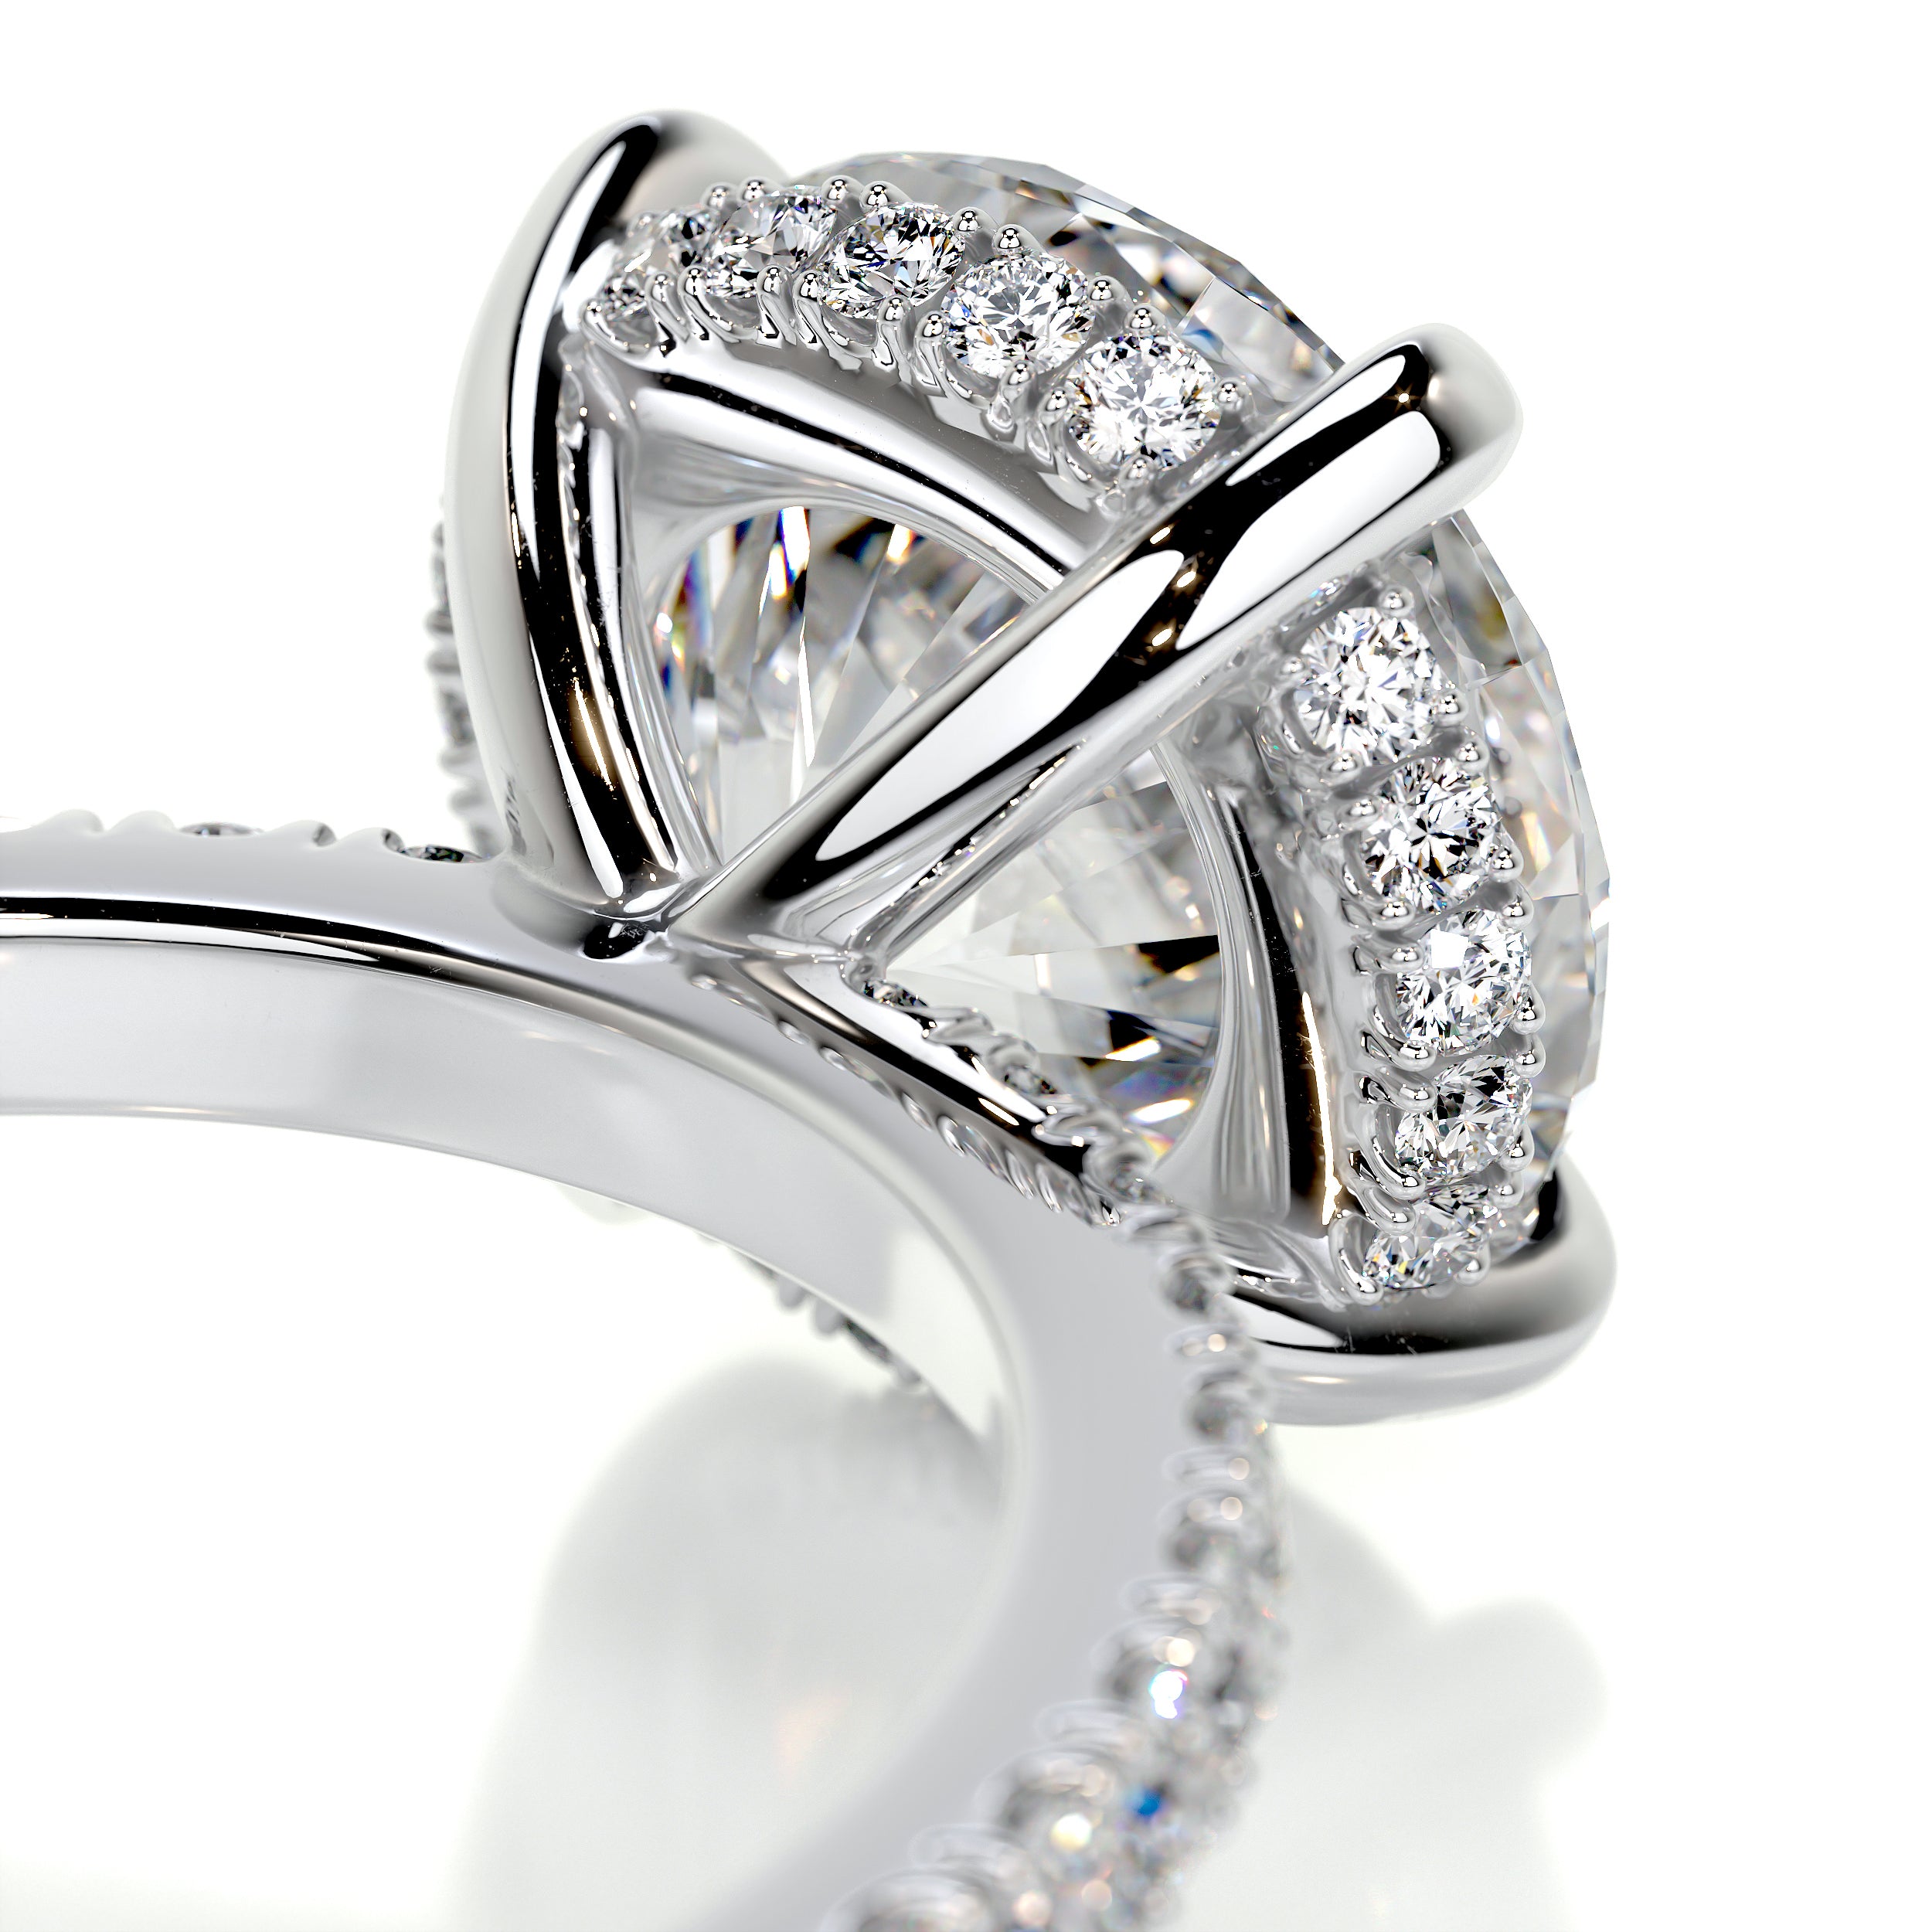 Valeria Diamond Engagement Ring -18K White Gold